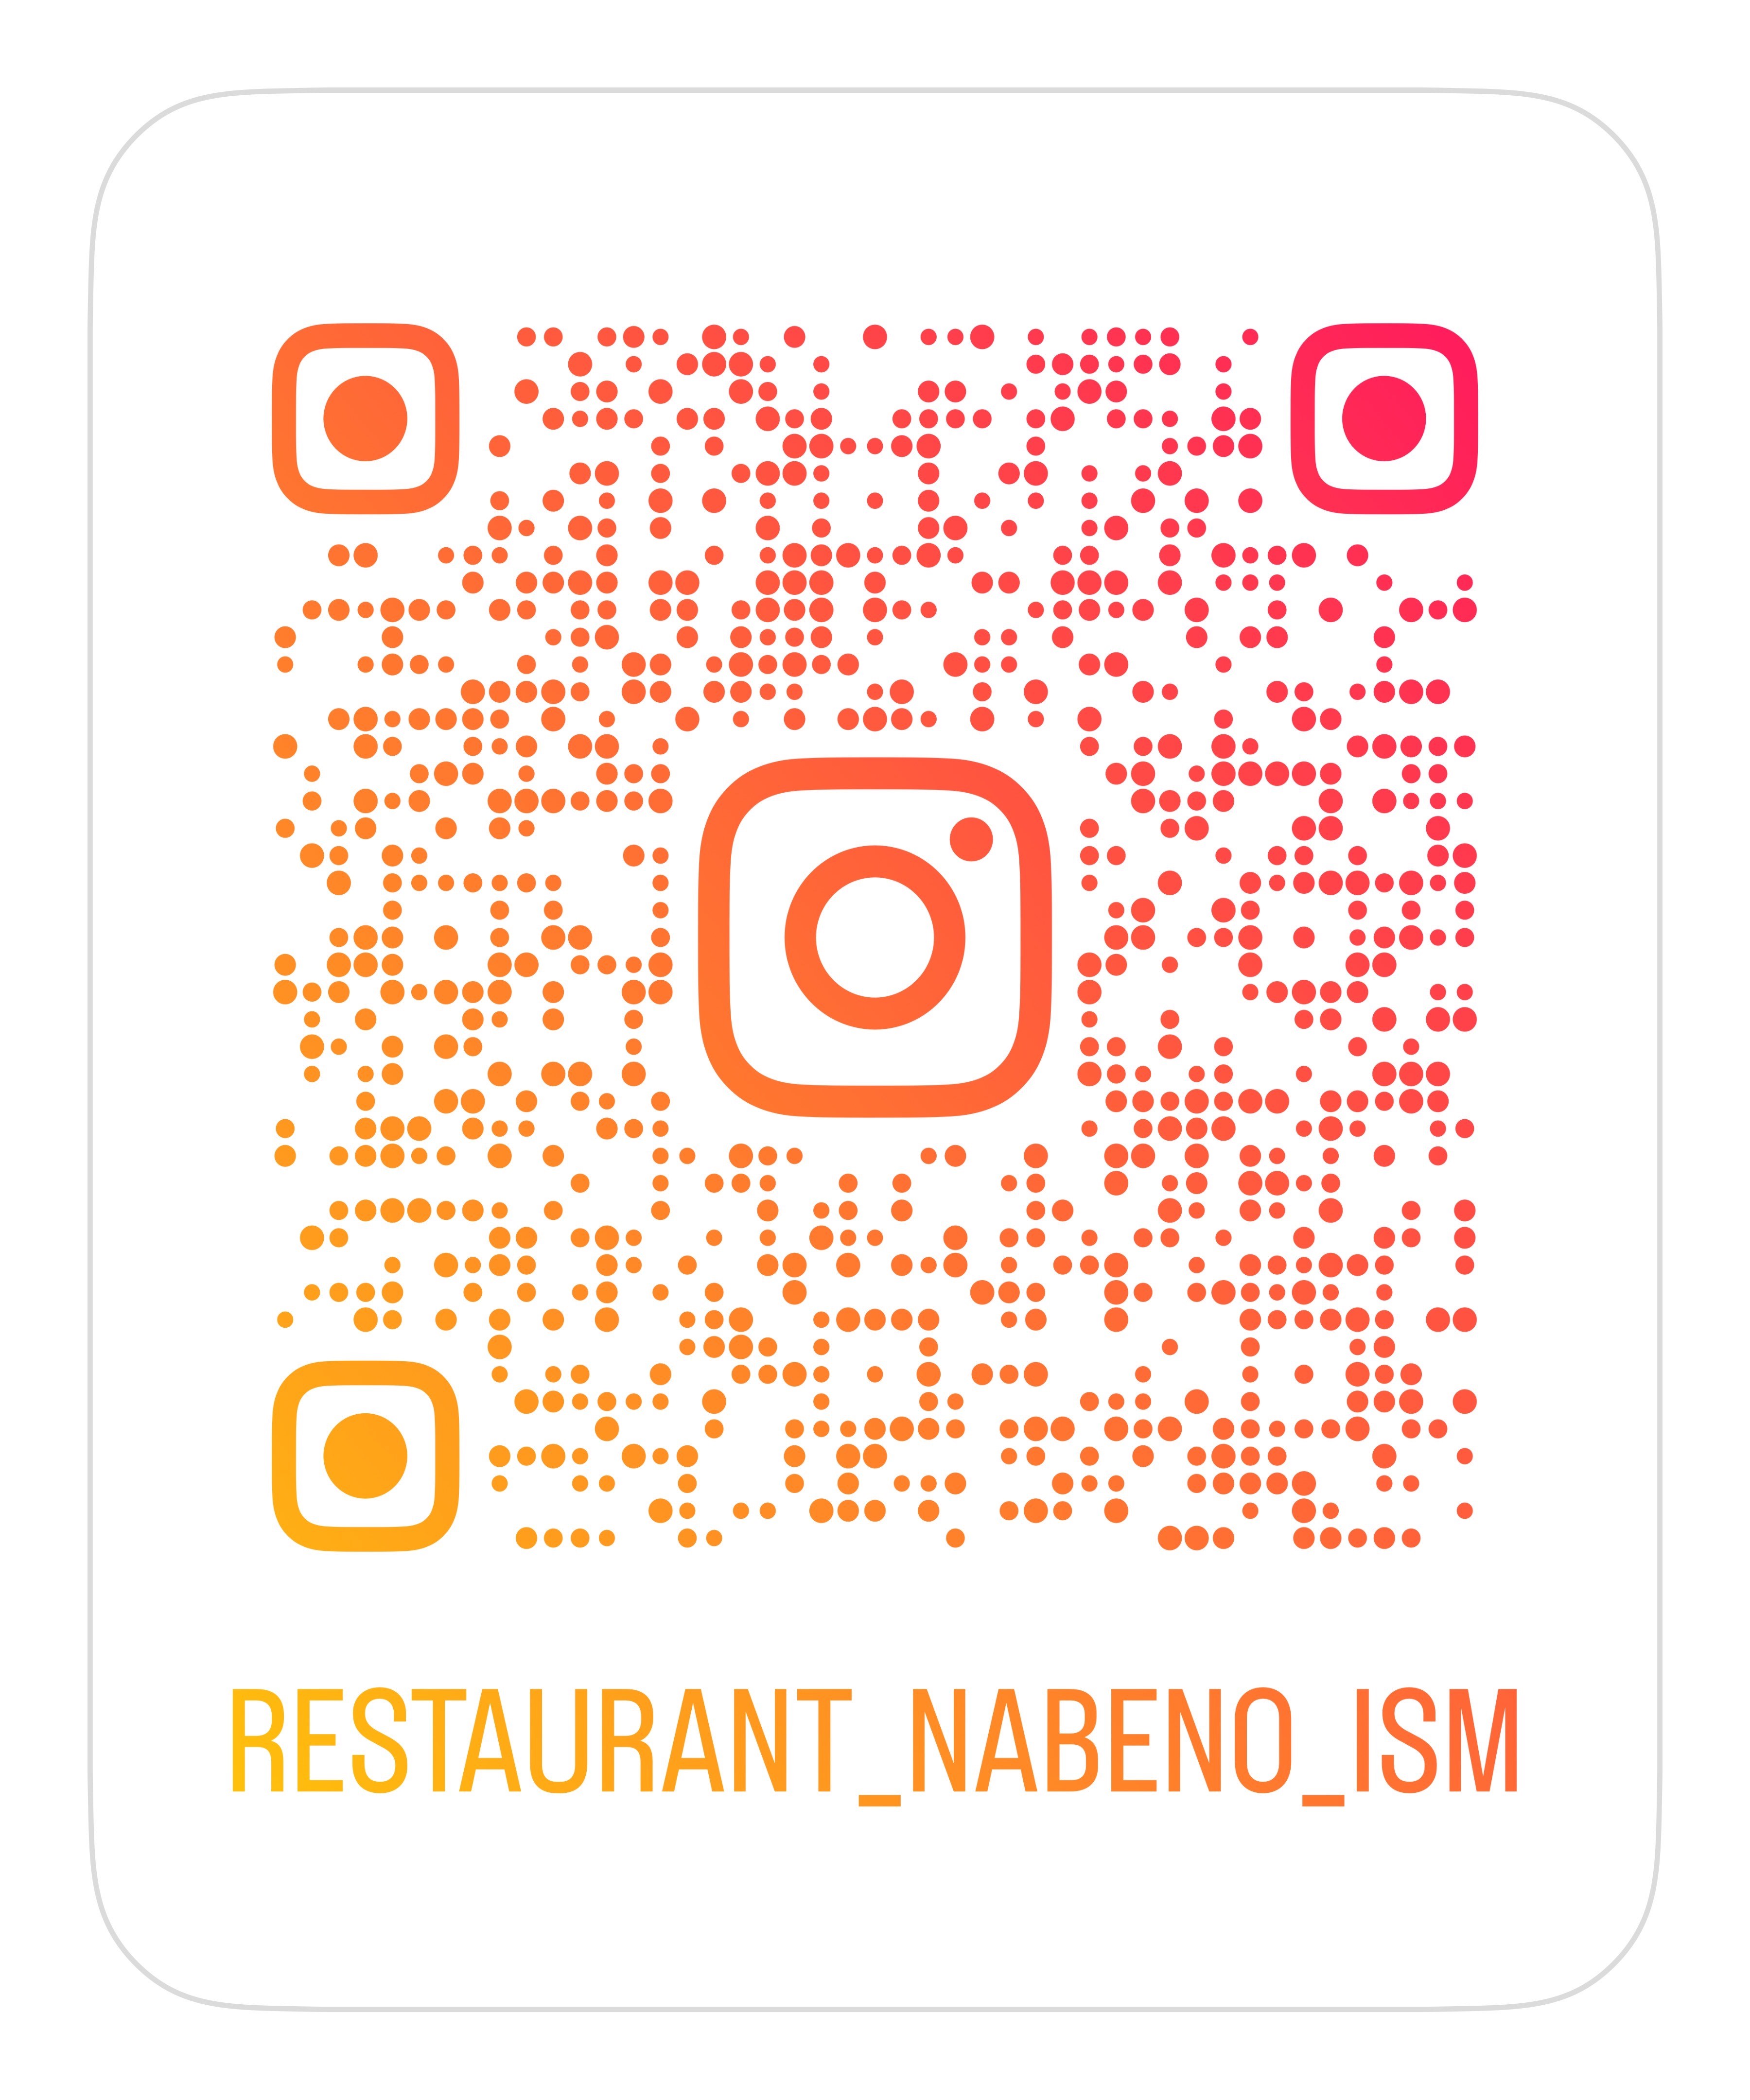 Nabeno-Ism Instagram